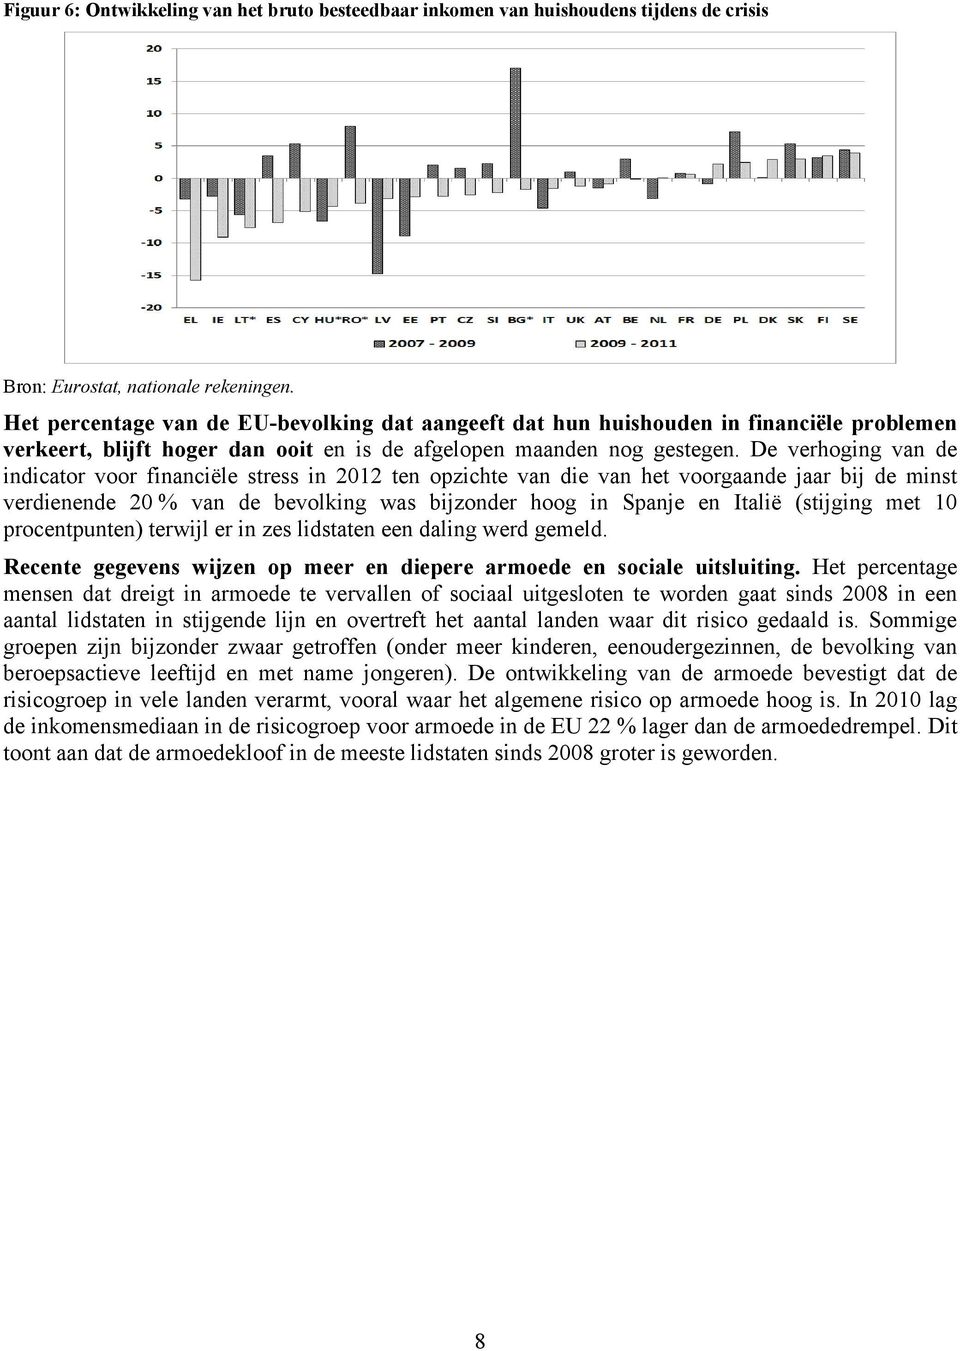 De verhoging van de indicator voor financiële stress in 2012 ten opzichte van die van het voorgaande jaar bij de minst verdienende 20 % van de bevolking was bijzonder hoog in Spanje en Italië